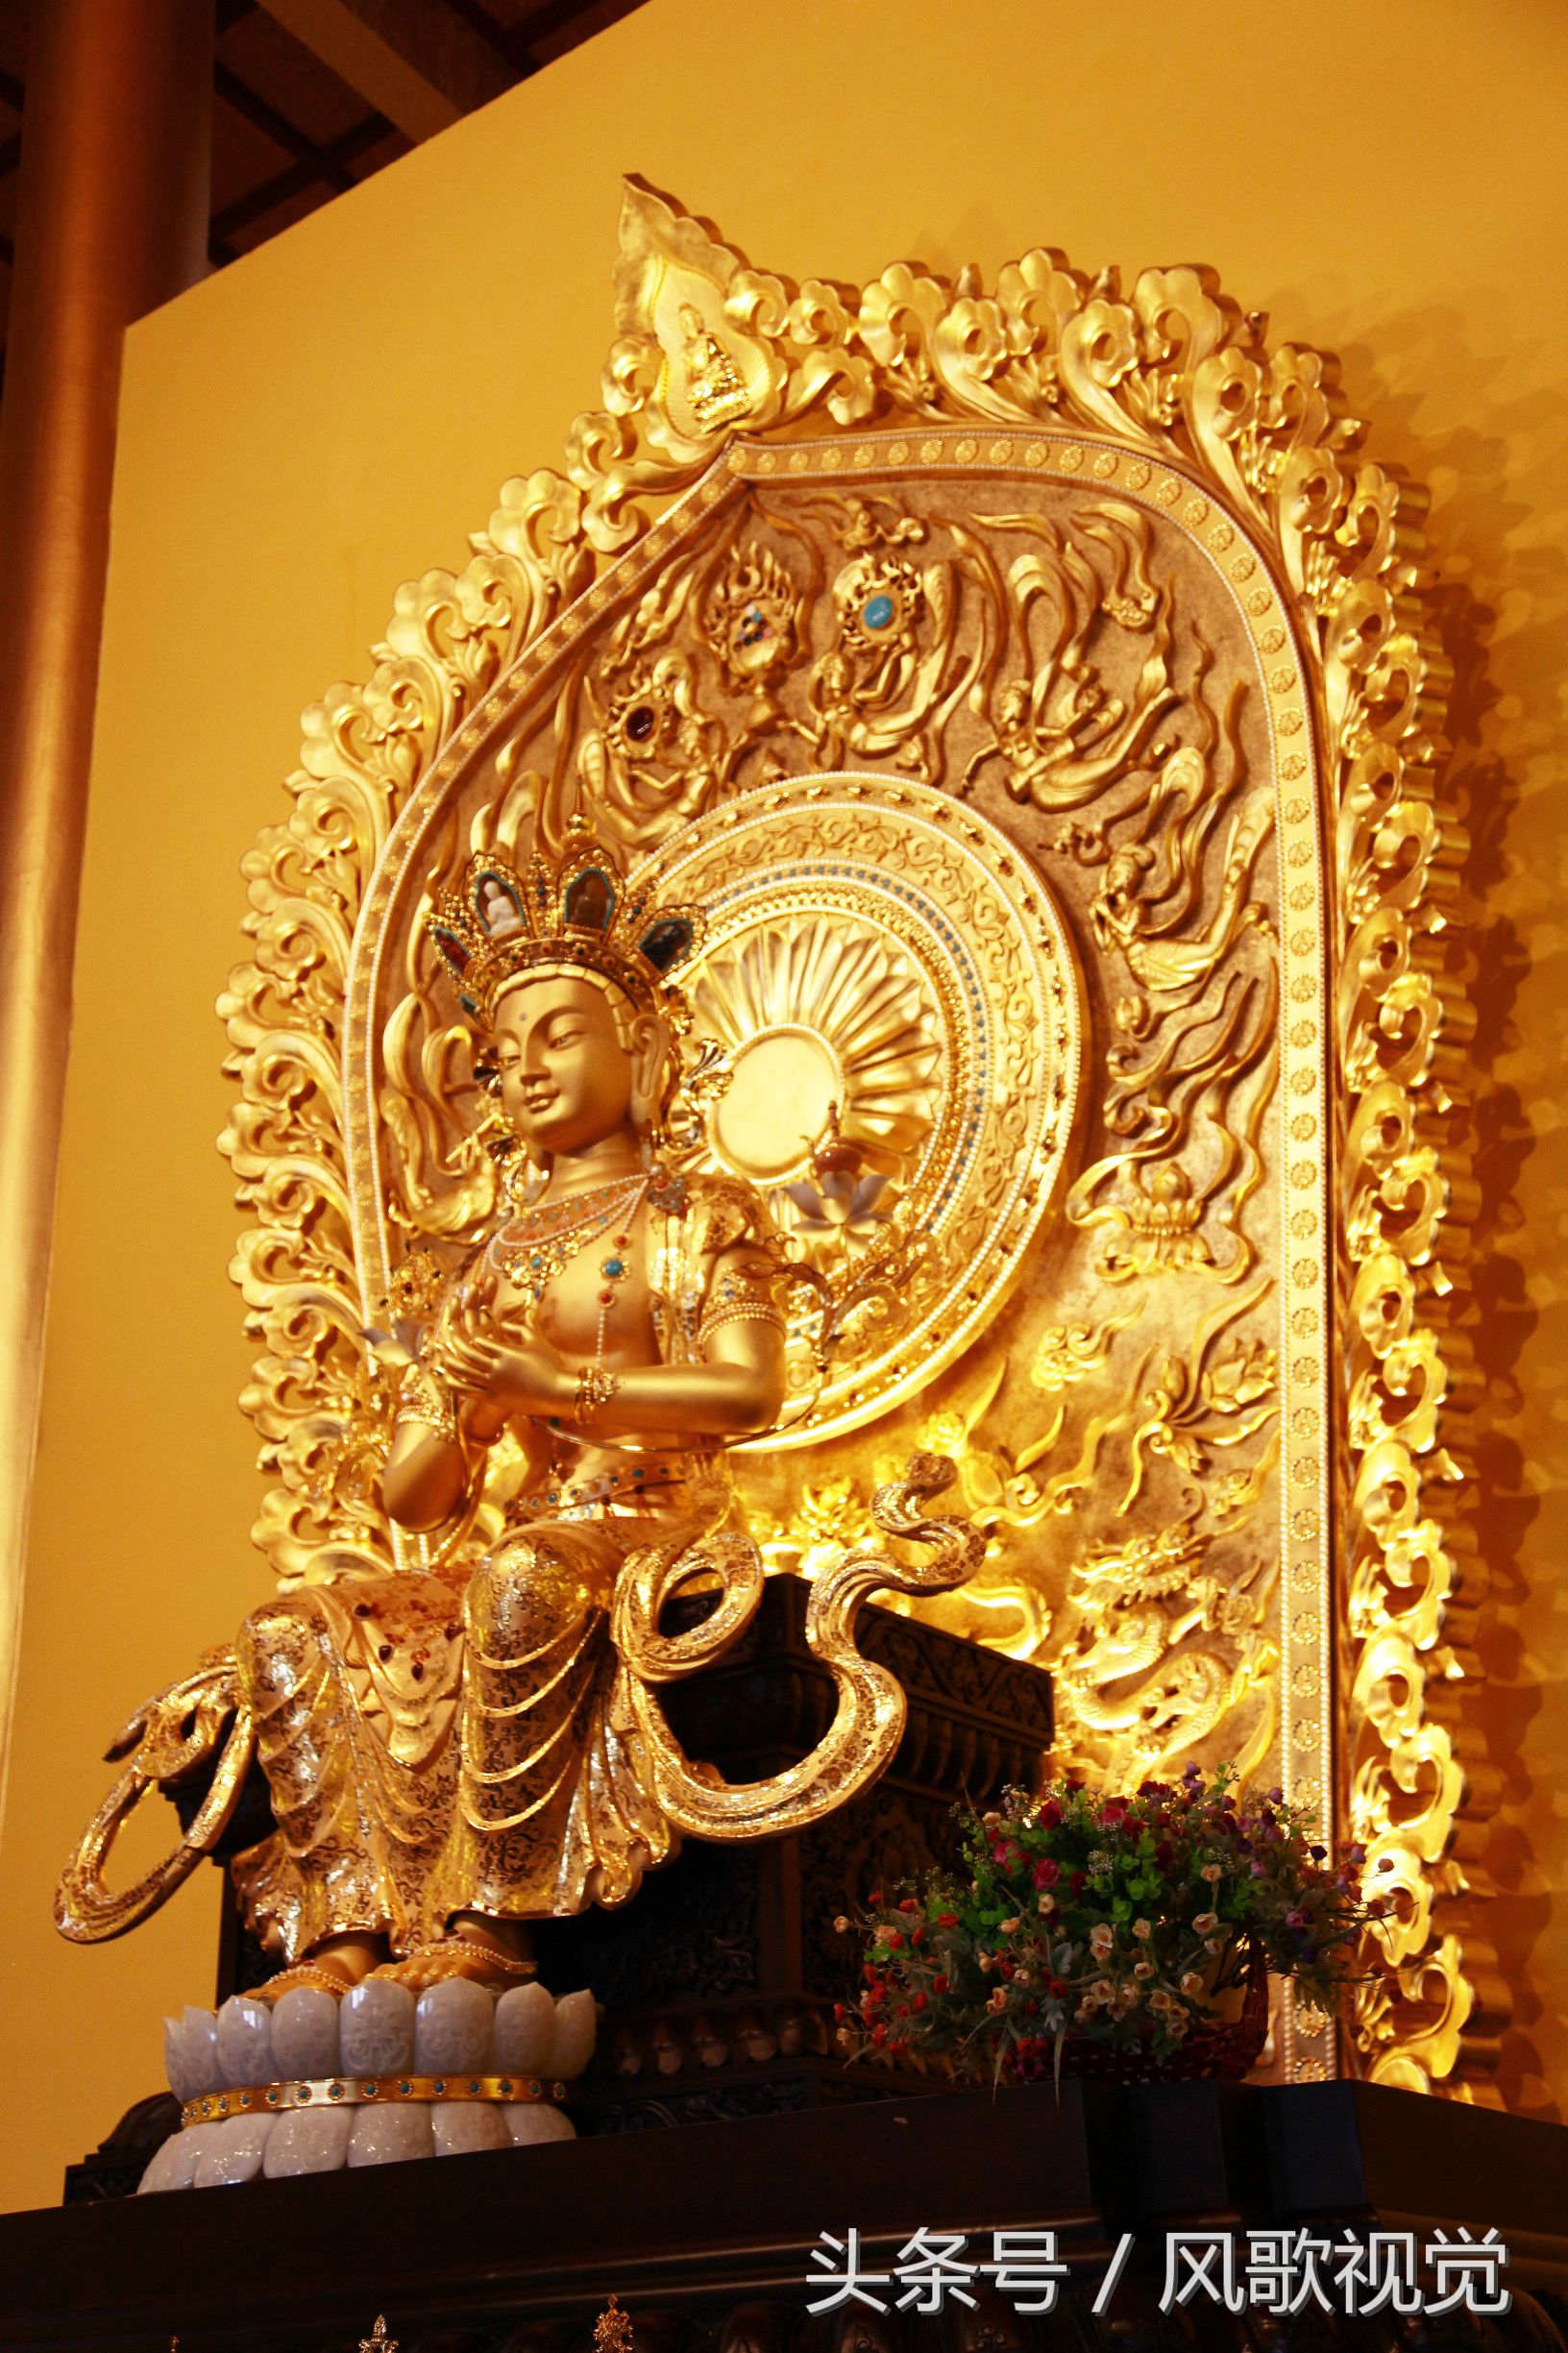 探访全球最大的梵净山金玉弥勒佛像,250多公斤黄金,造价一个亿